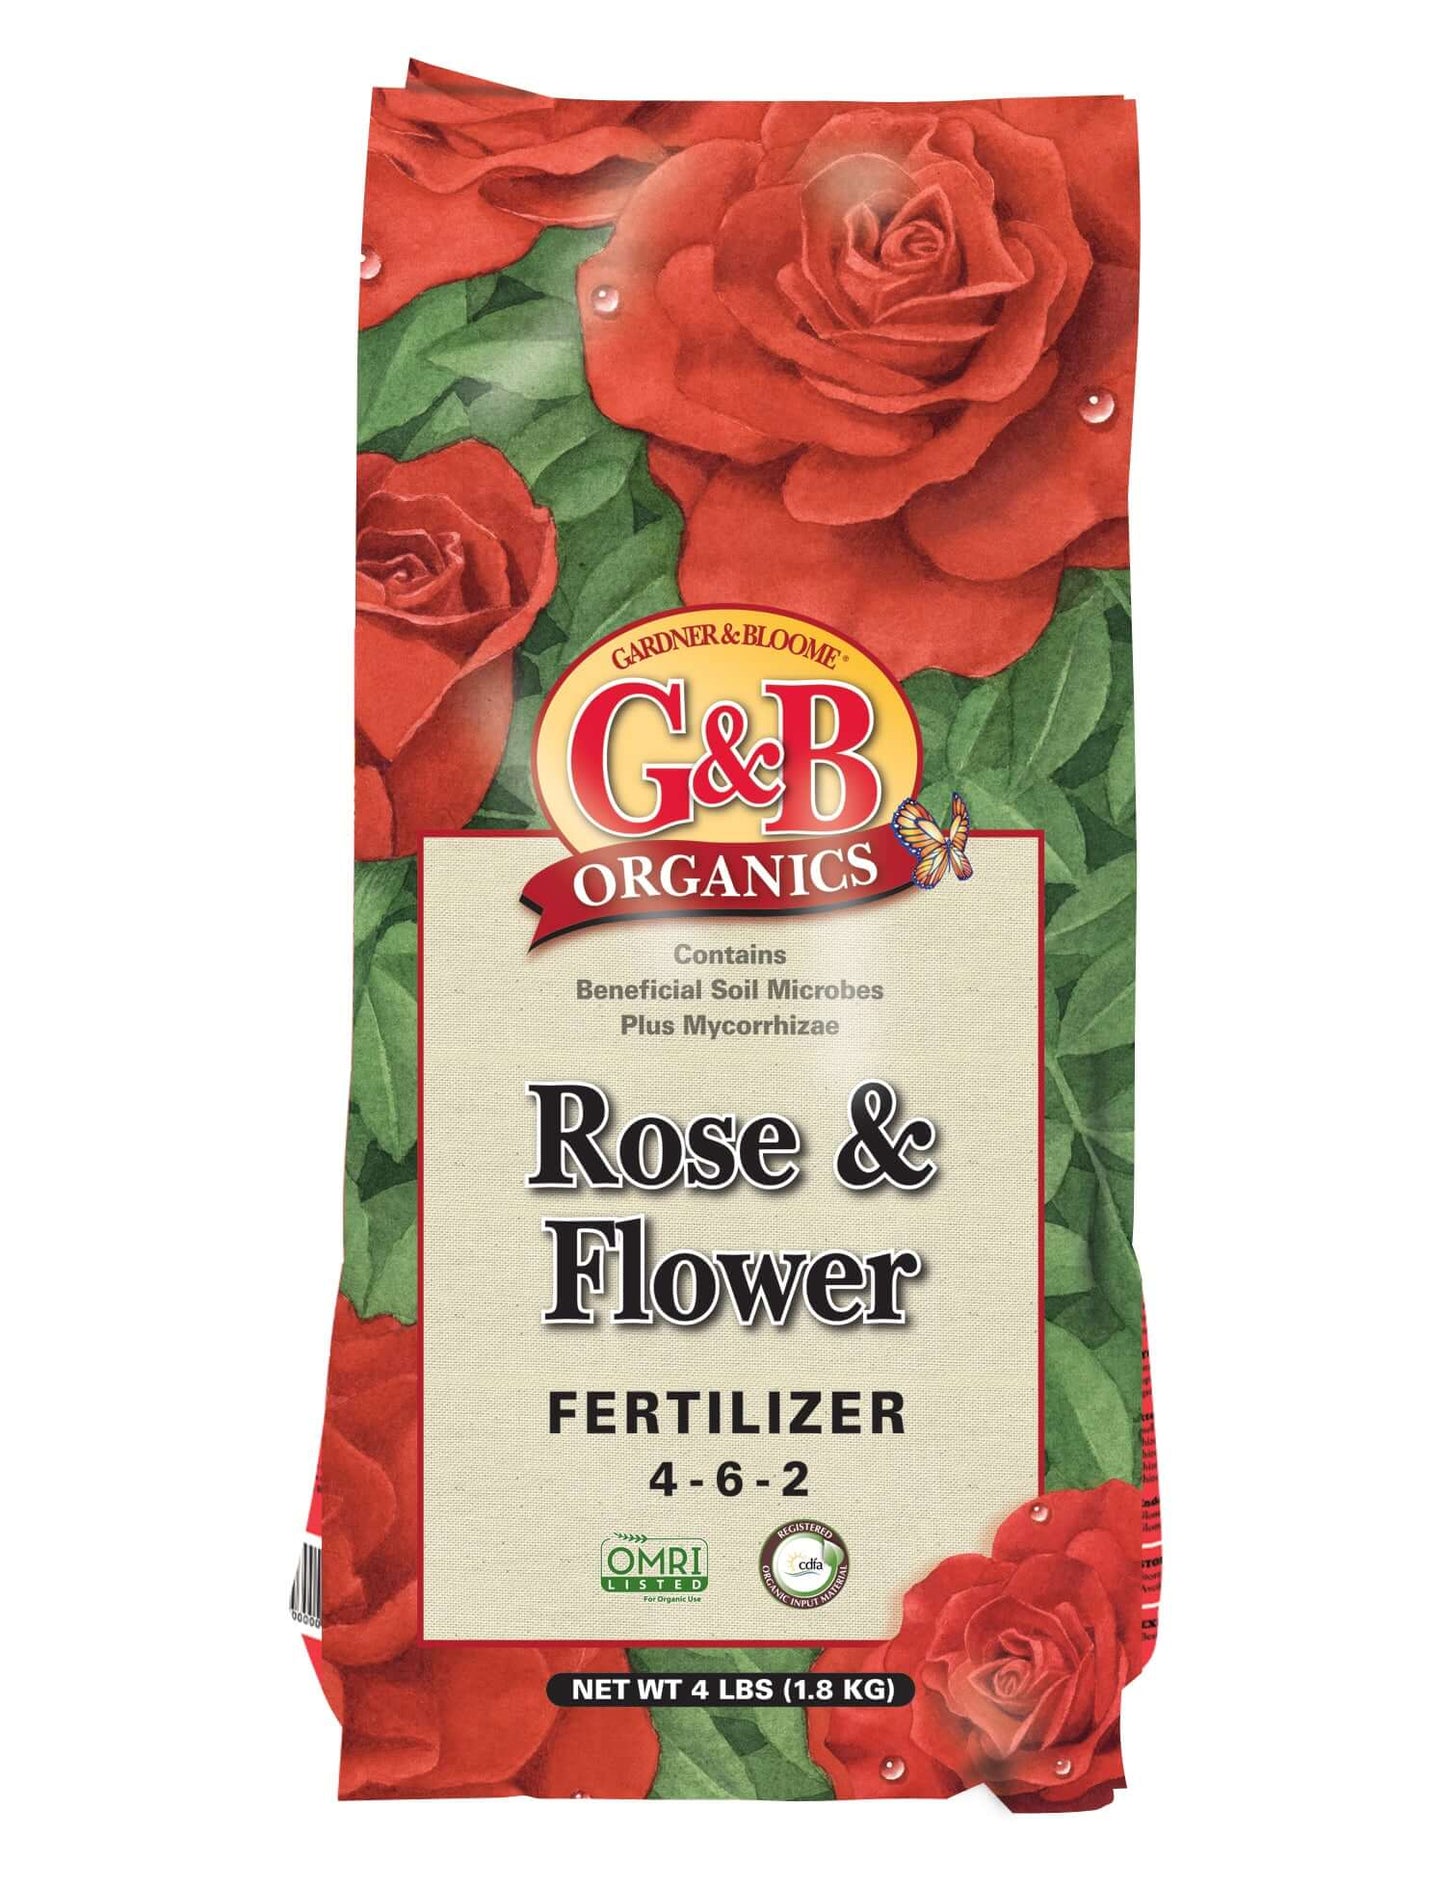 Rose & Flower Fertilizer 4-6-2 (4-lb bag) (7890302730495)